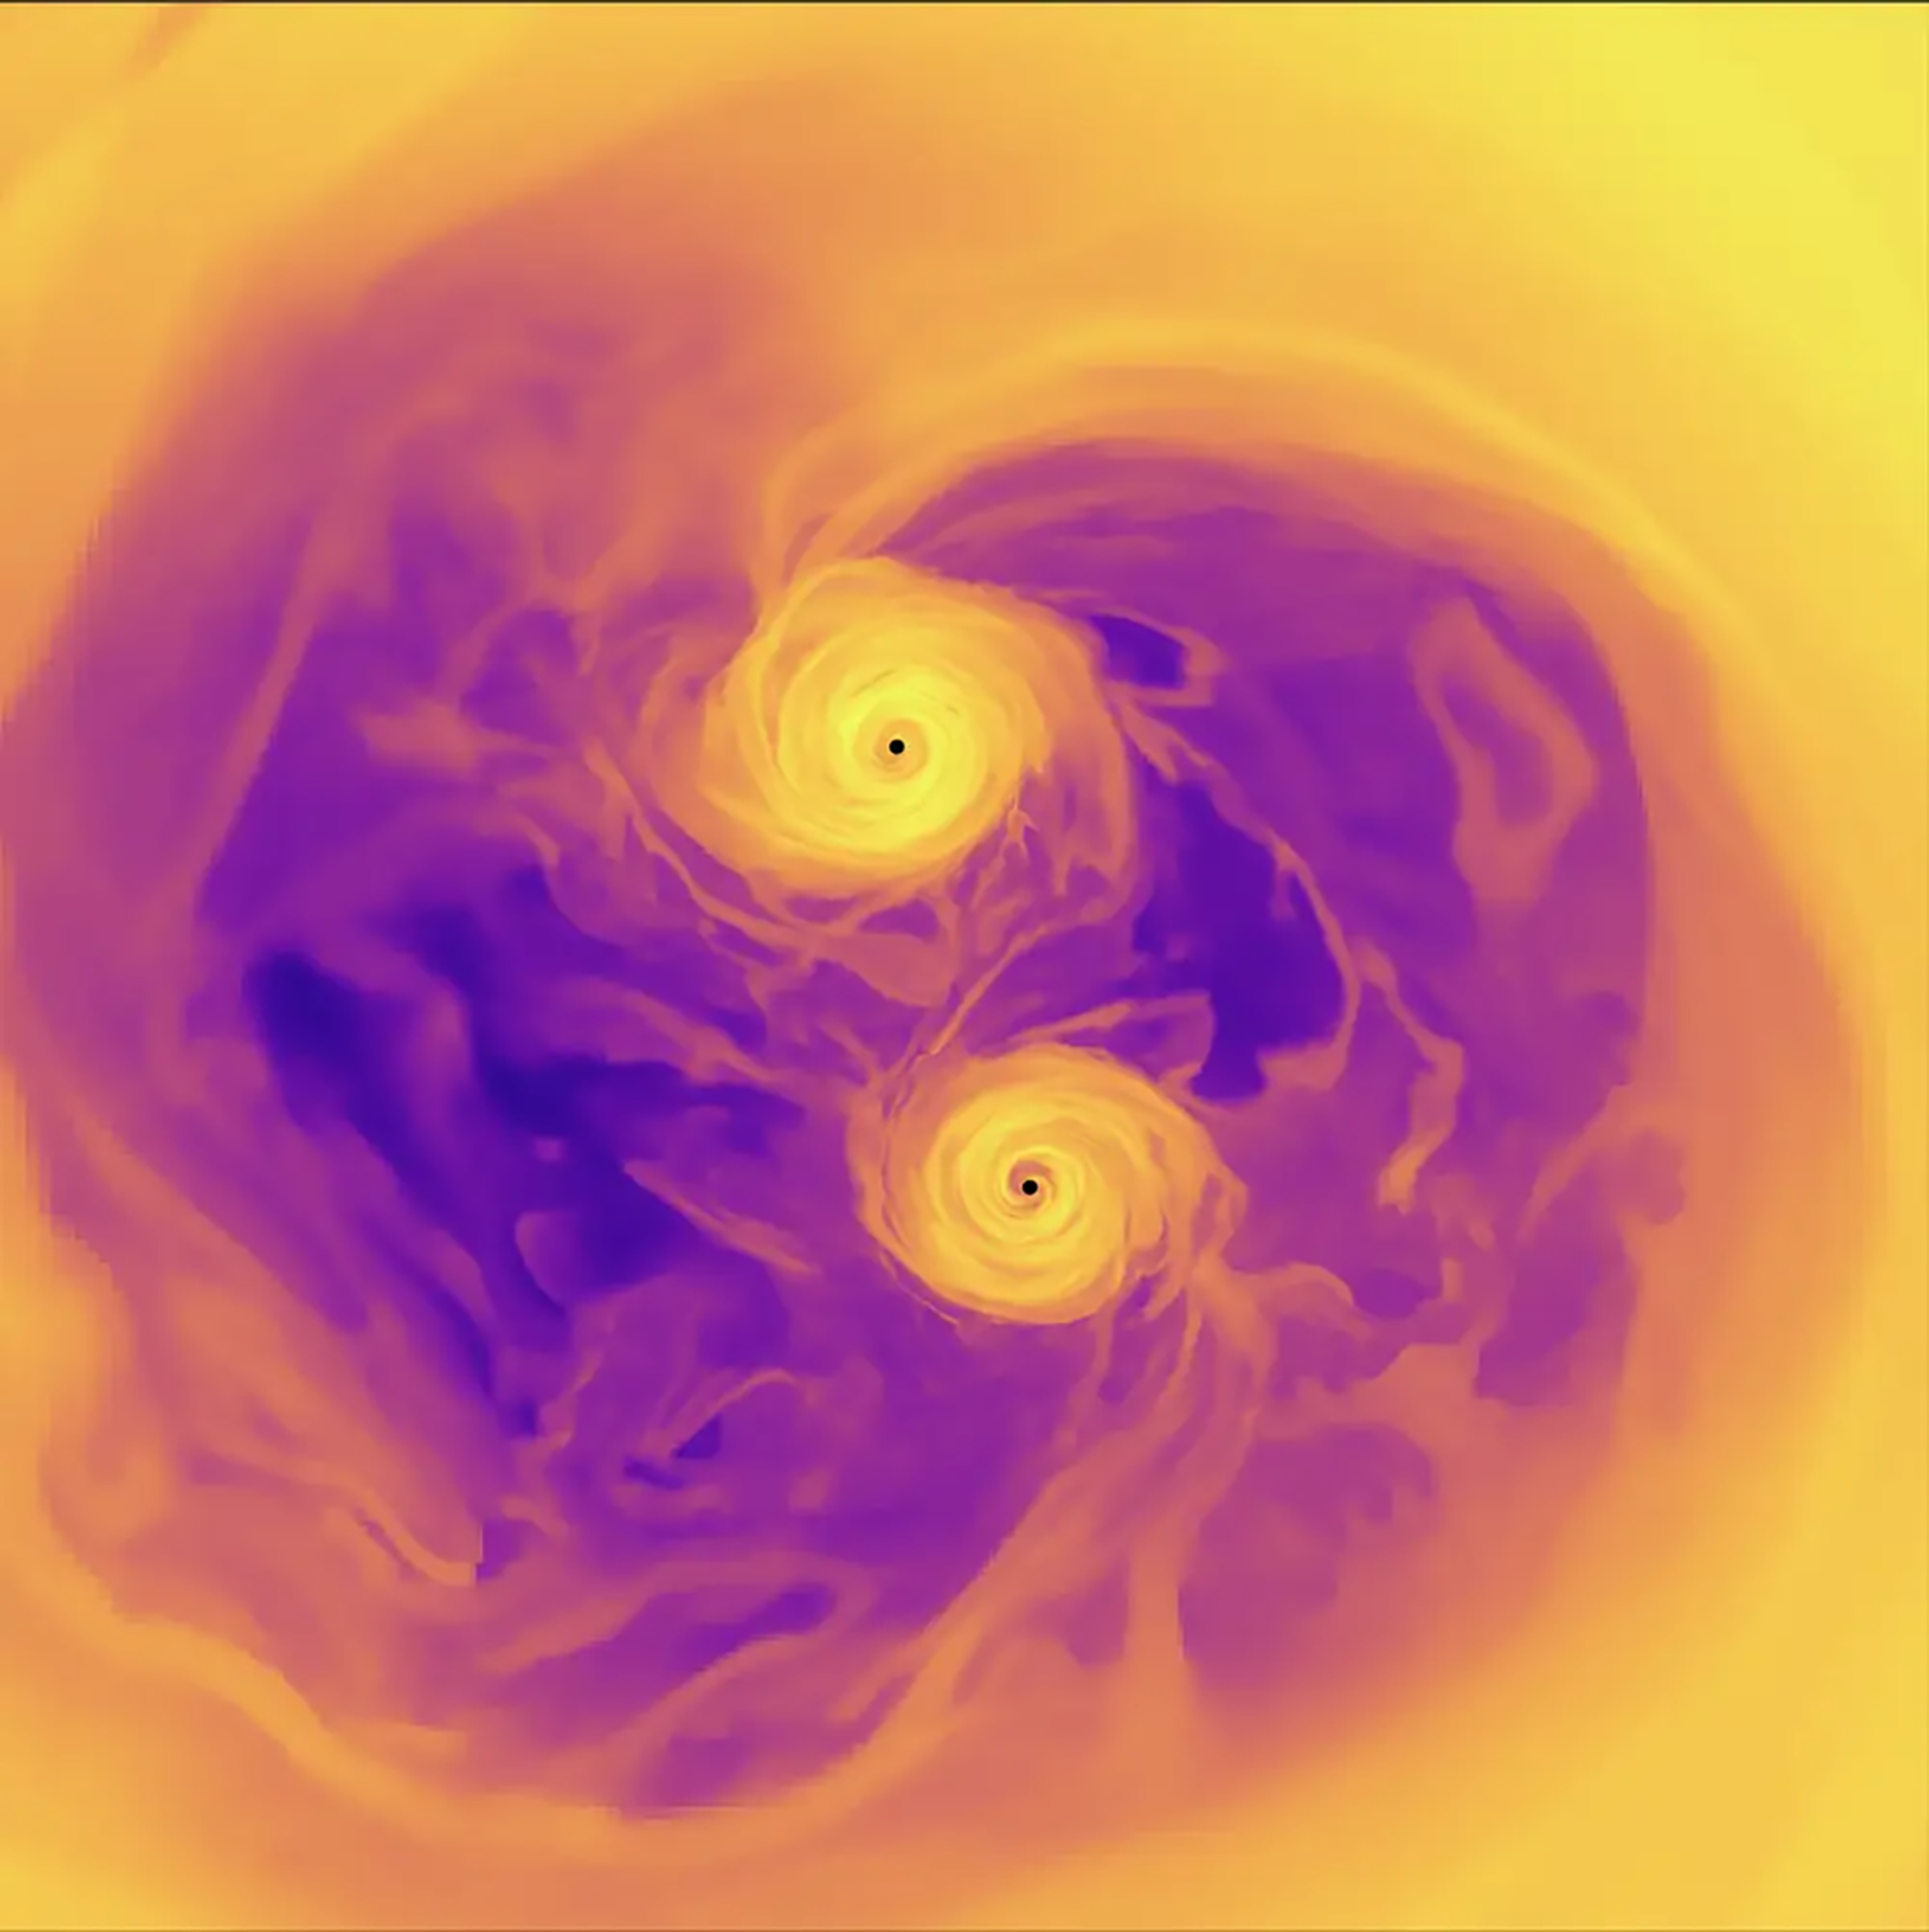 Simulación de dos agujeros negros supermasivos interactuando